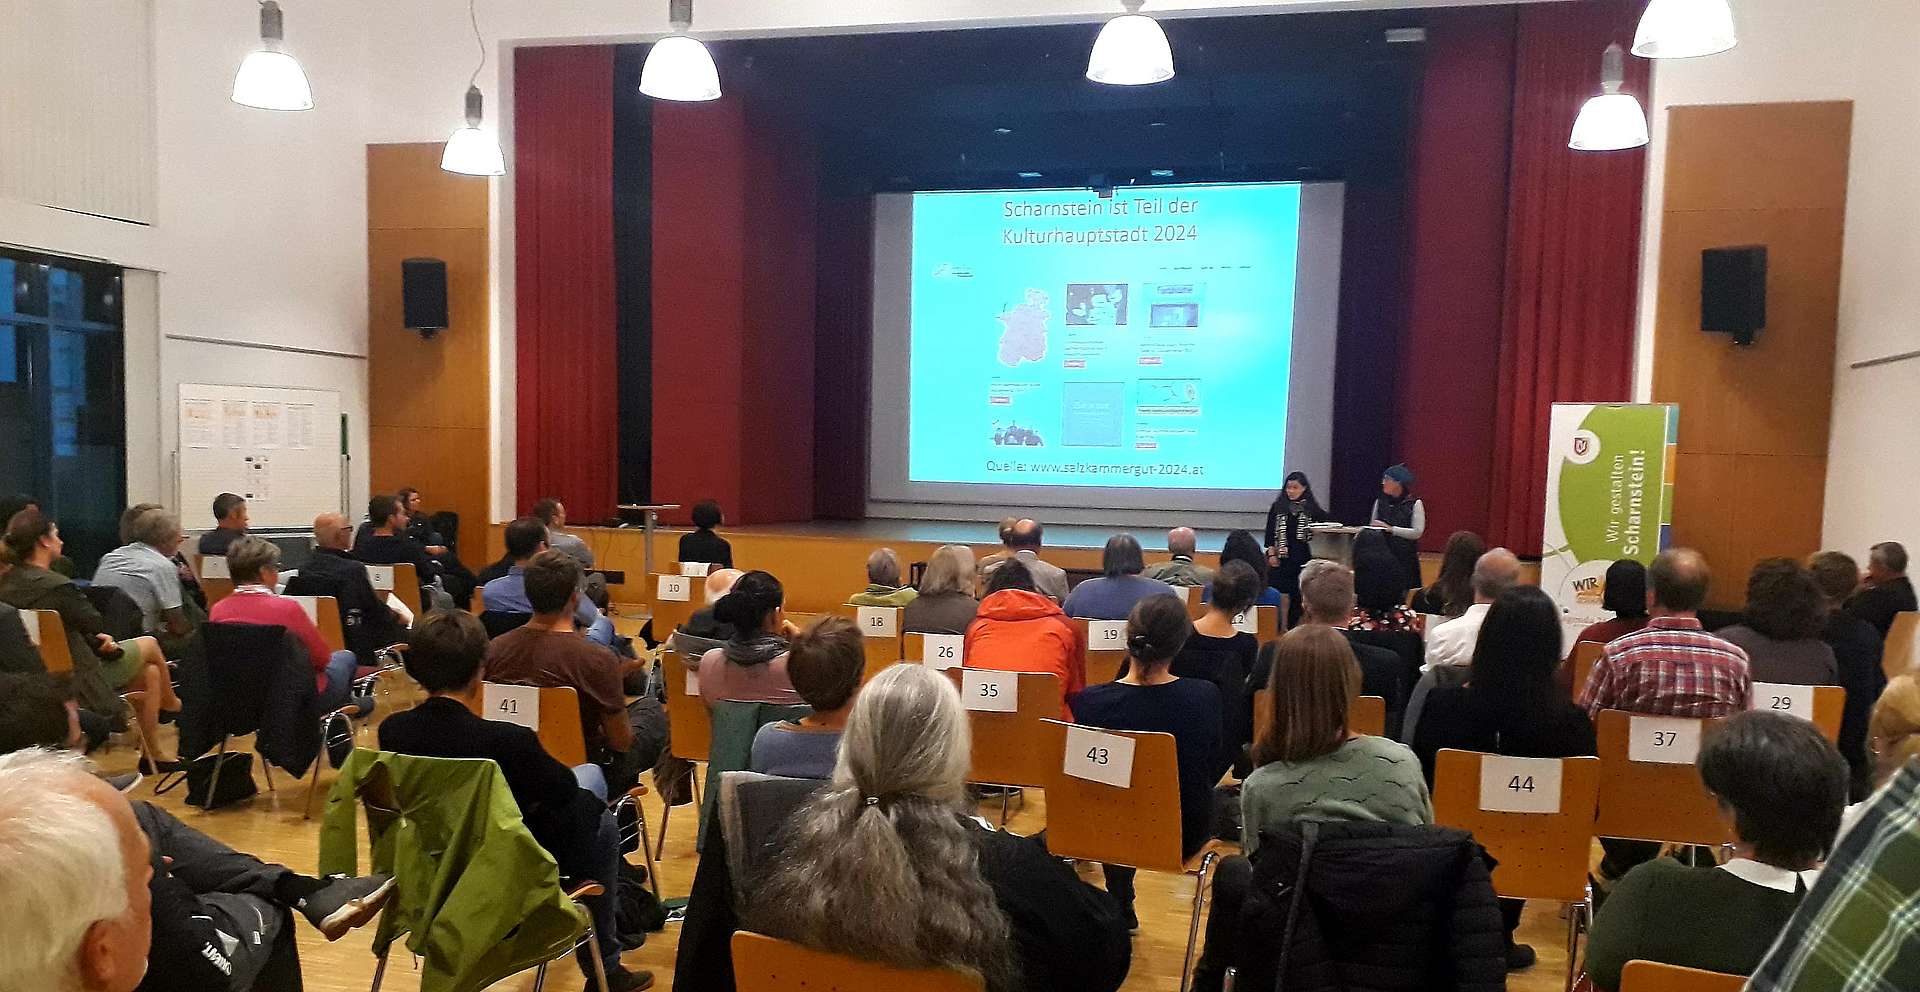 50 Besucher im Saal der Musikschule Scharnstein hören einen Vortrag